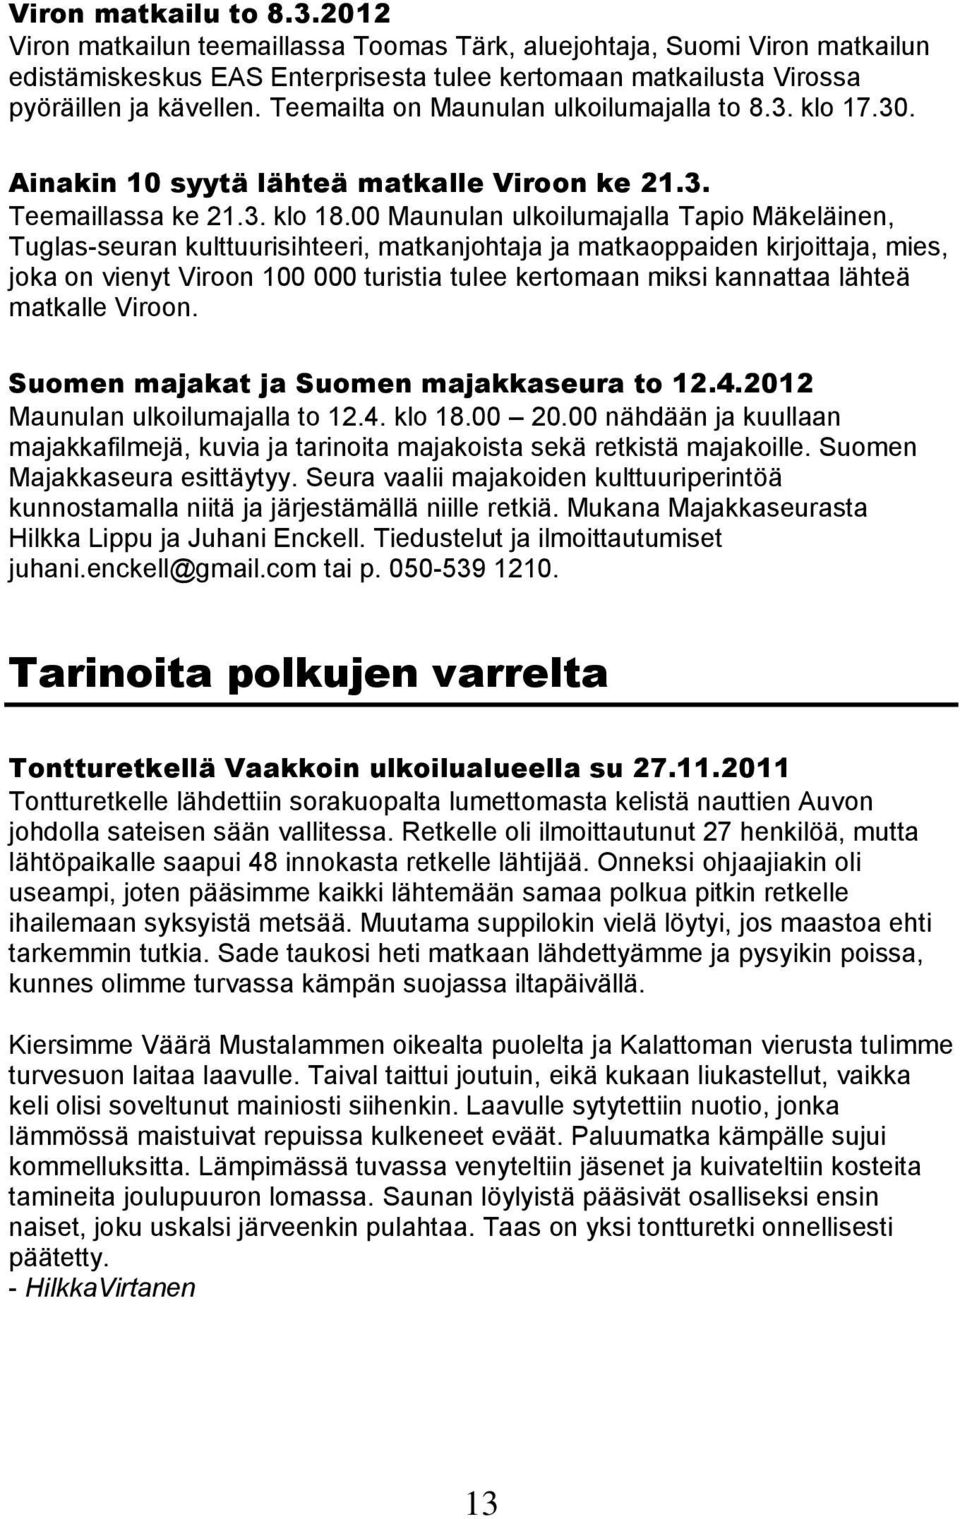 00 Maunulan ulkoilumajalla Tapio Mäkeläinen, Tuglas-seuran kulttuurisihteeri, matkanjohtaja ja matkaoppaiden kirjoittaja, mies, joka on vienyt Viroon 100 000 turistia tulee kertomaan miksi kannattaa